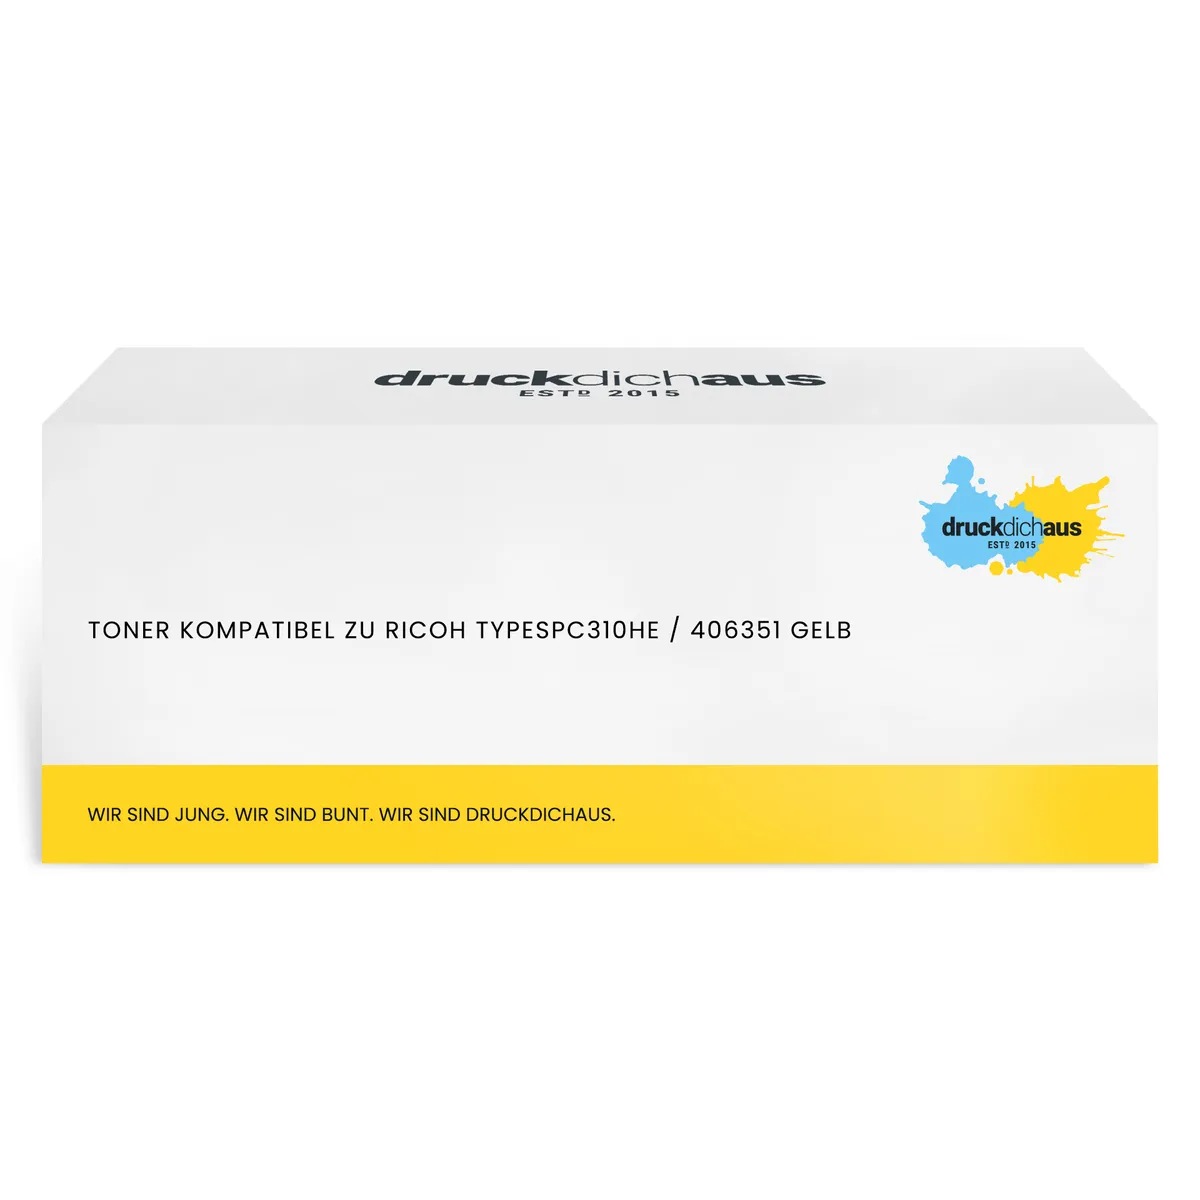 Toner kompatibel zu Ricoh TYPESPC310HE / 406351 gelb